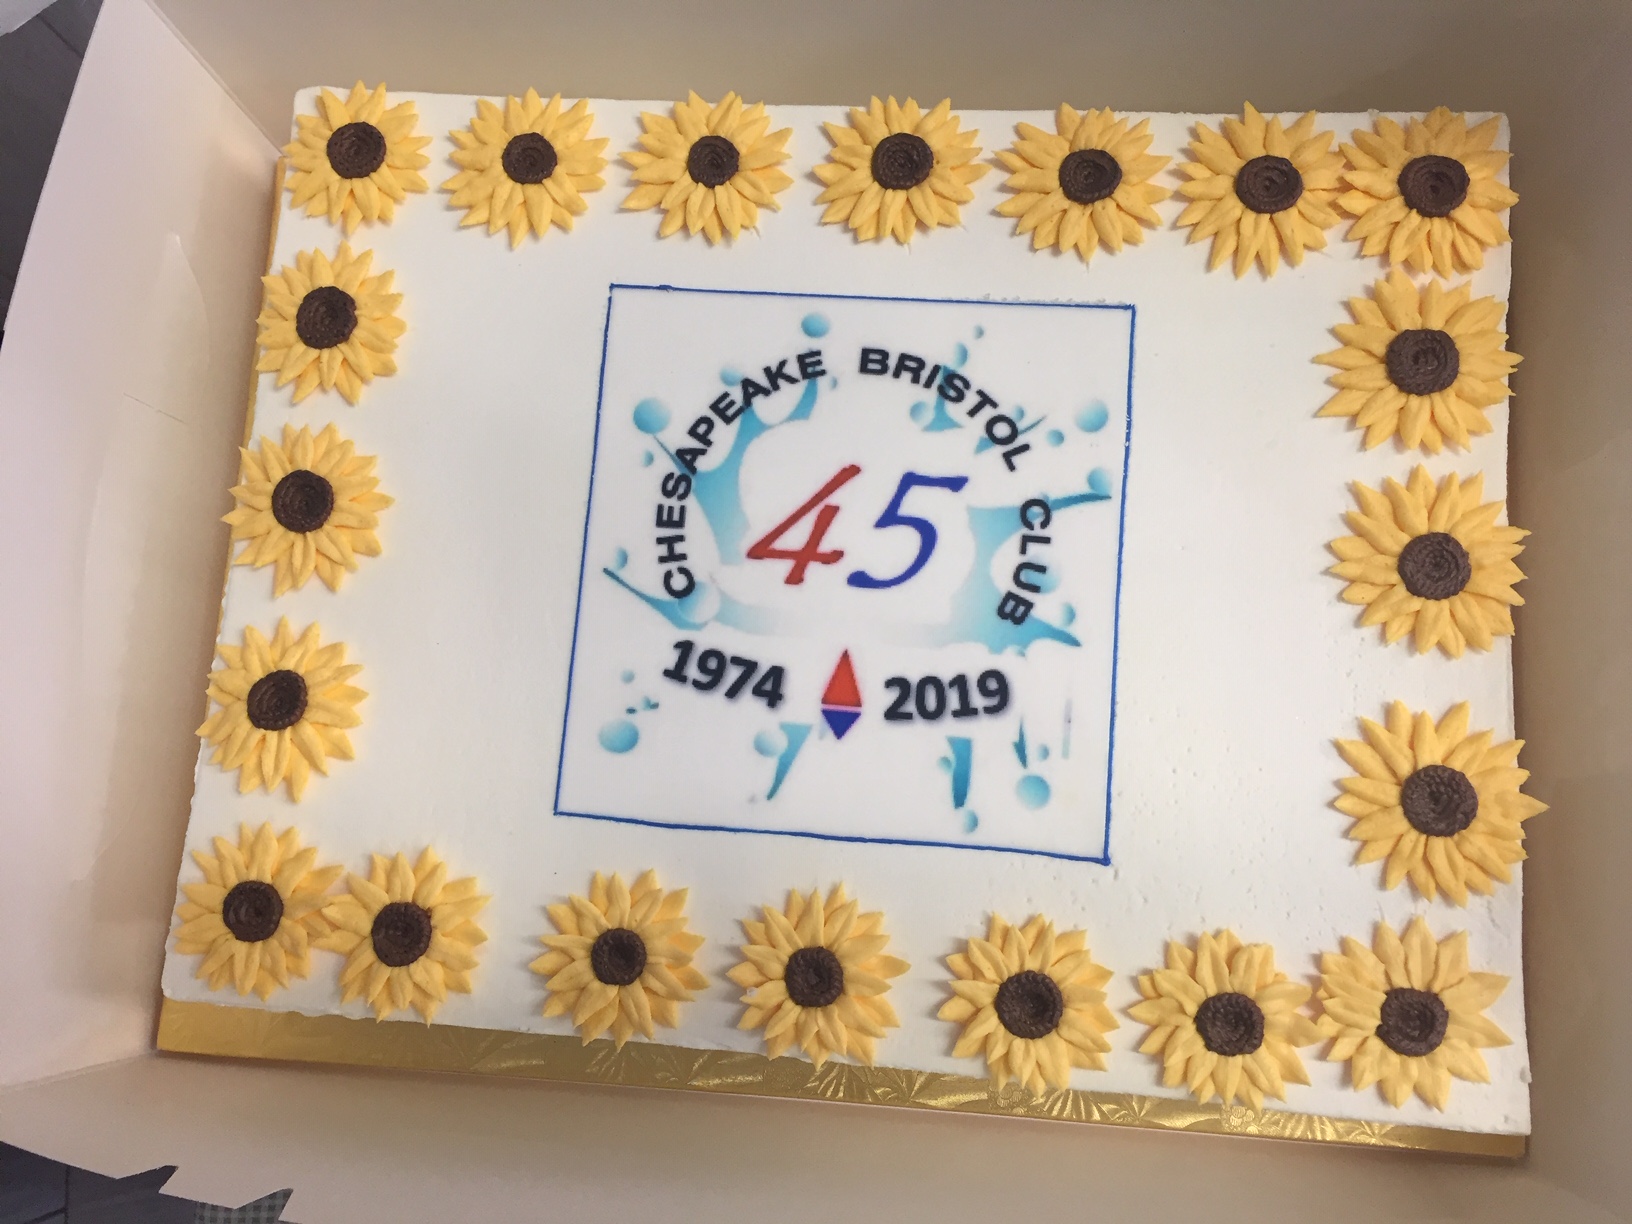 45th Anniversary Cake